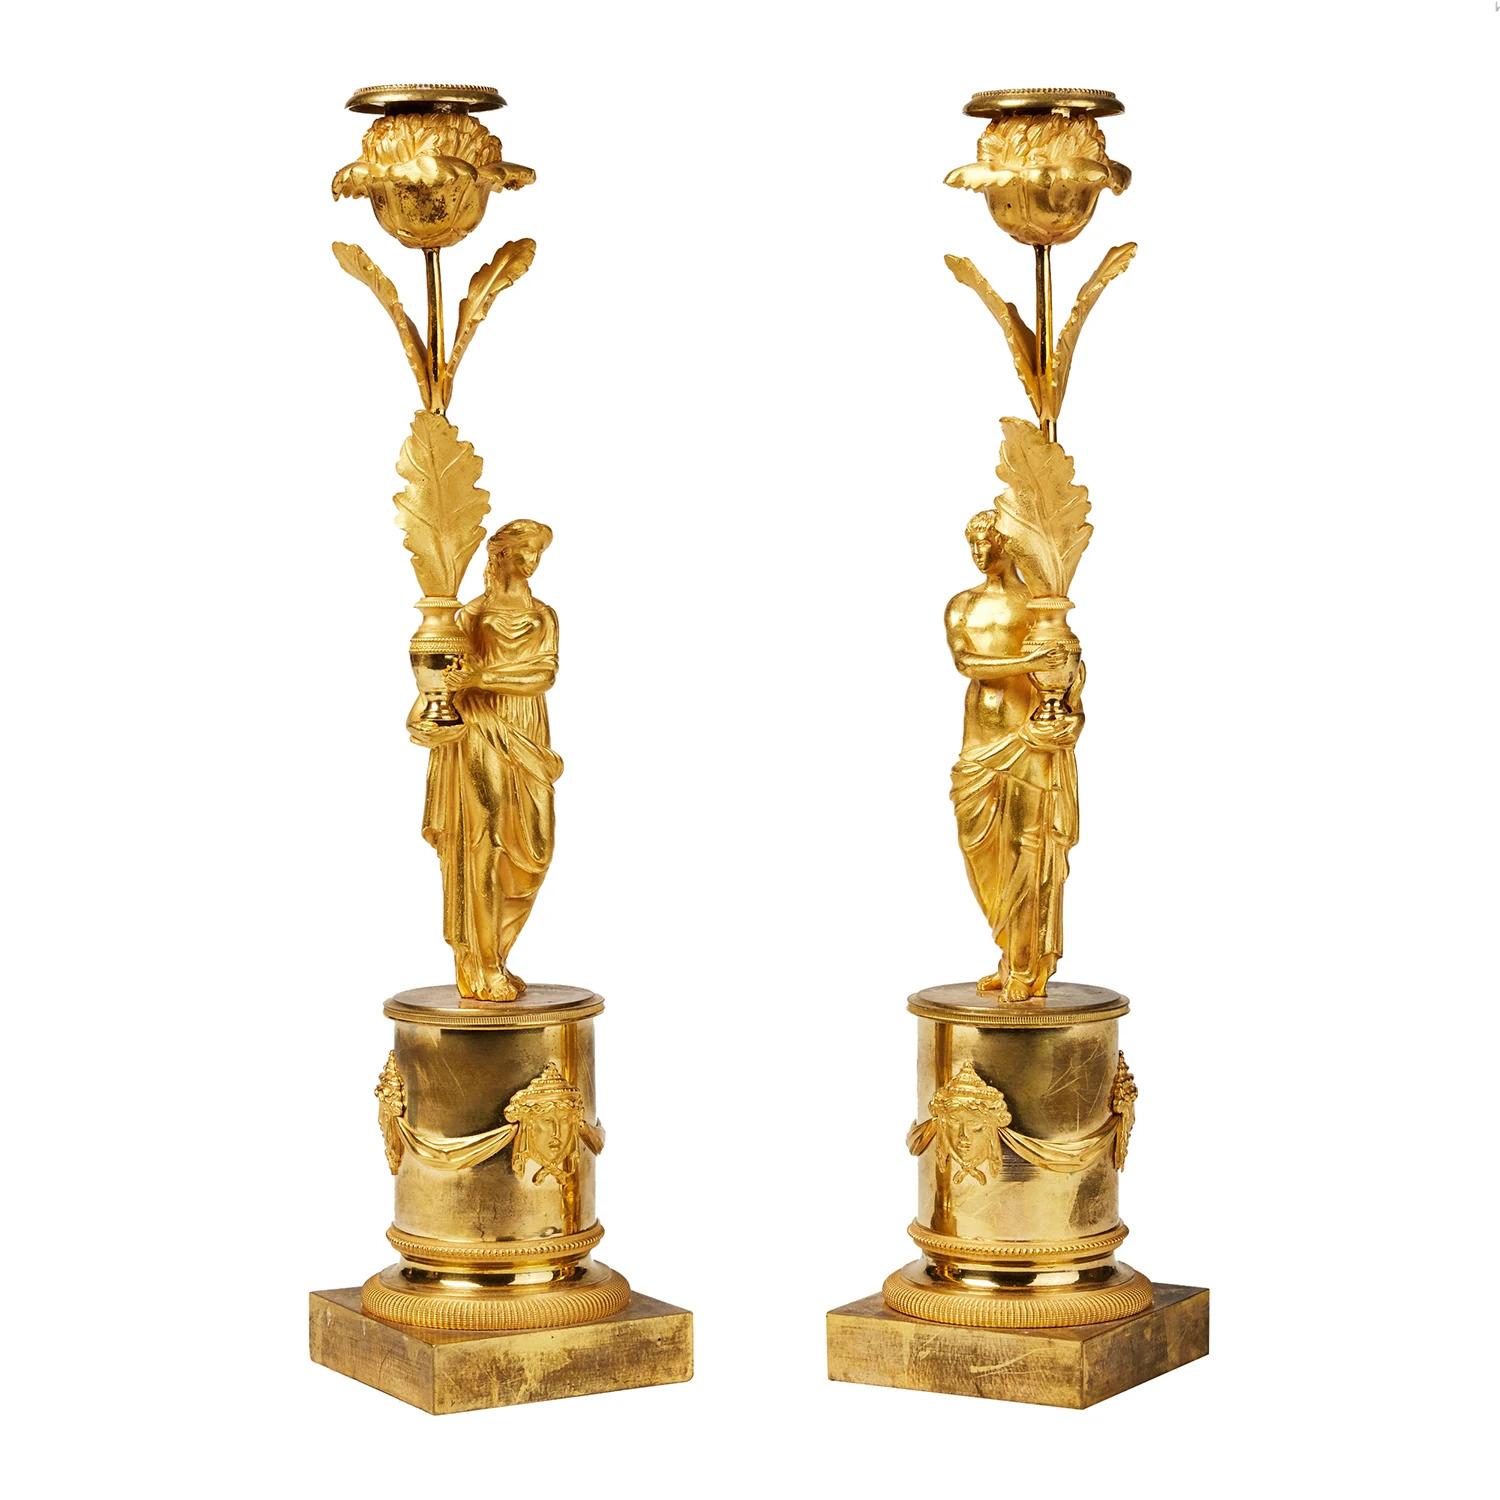 Ein goldenes, antikes französisches Paar Kerzenhalter aus handgefertigter, mattierter und polierter, feuervergoldeter Bronze, in gutem Zustand. Jeder der detaillierten Stöcke ist mit einem Gesicht mascarons, ein gekrönter Mann und eine Frau, die